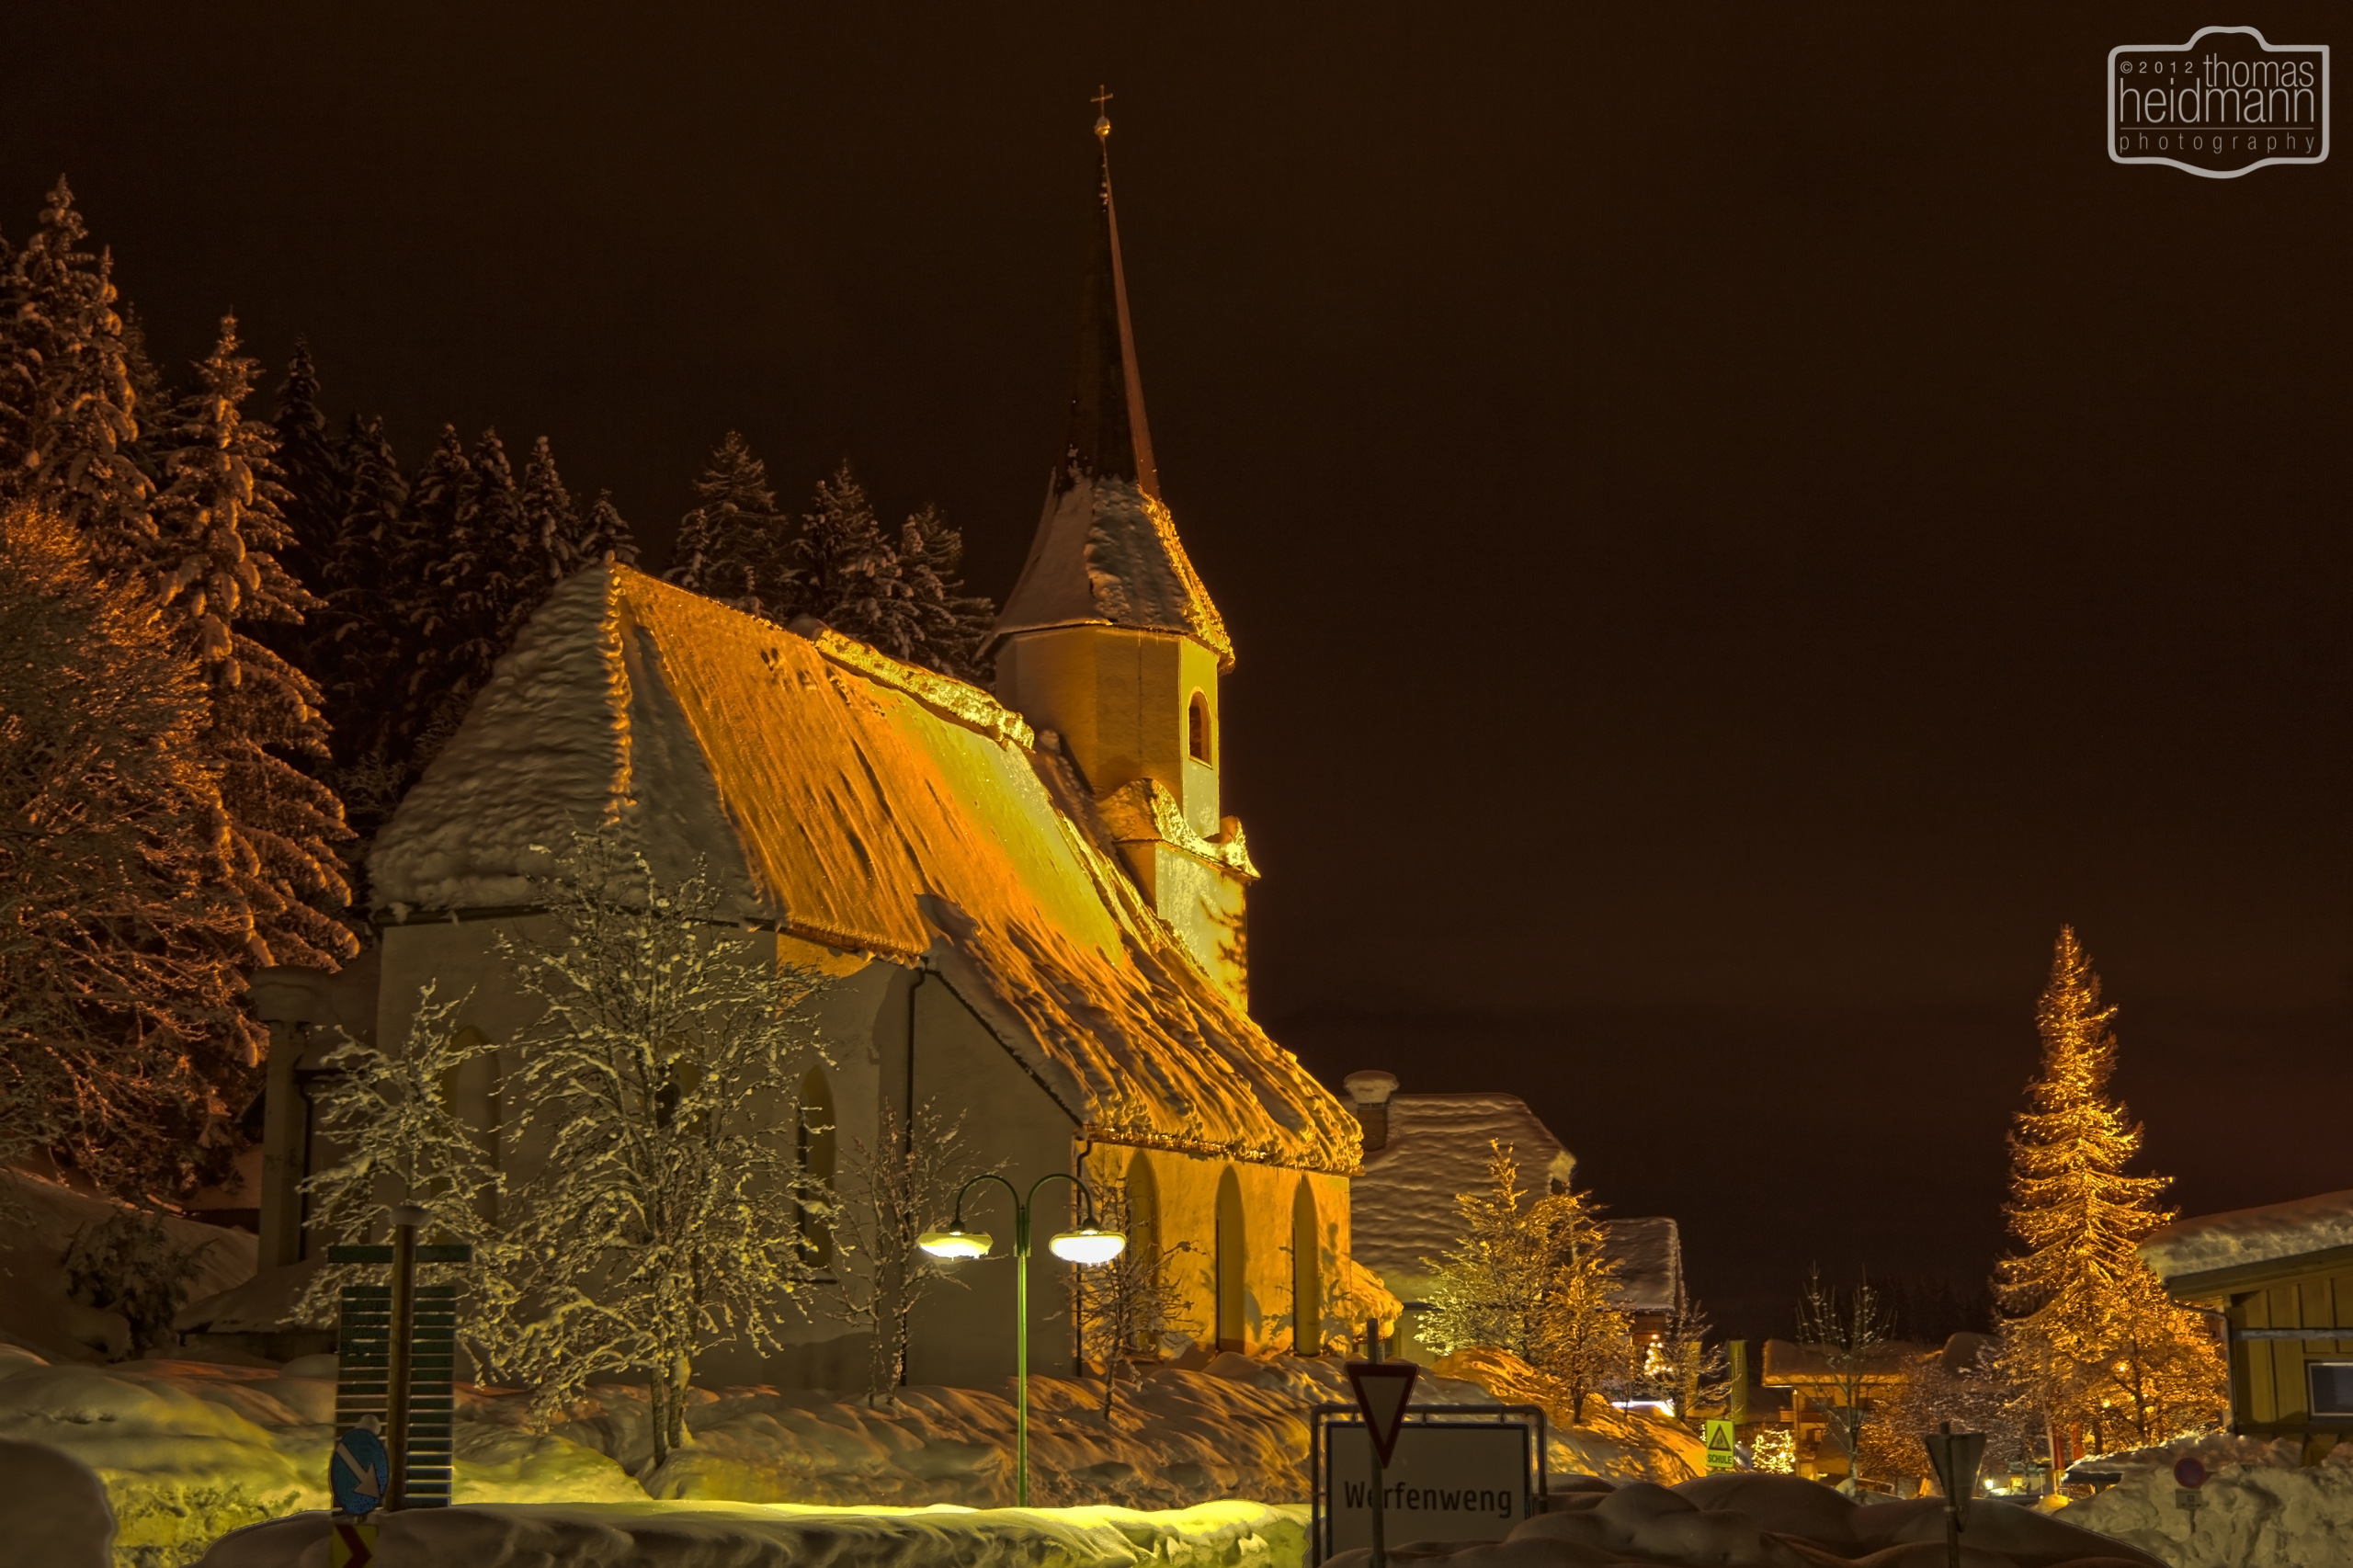 Werfenwenger Kirche bei Nacht